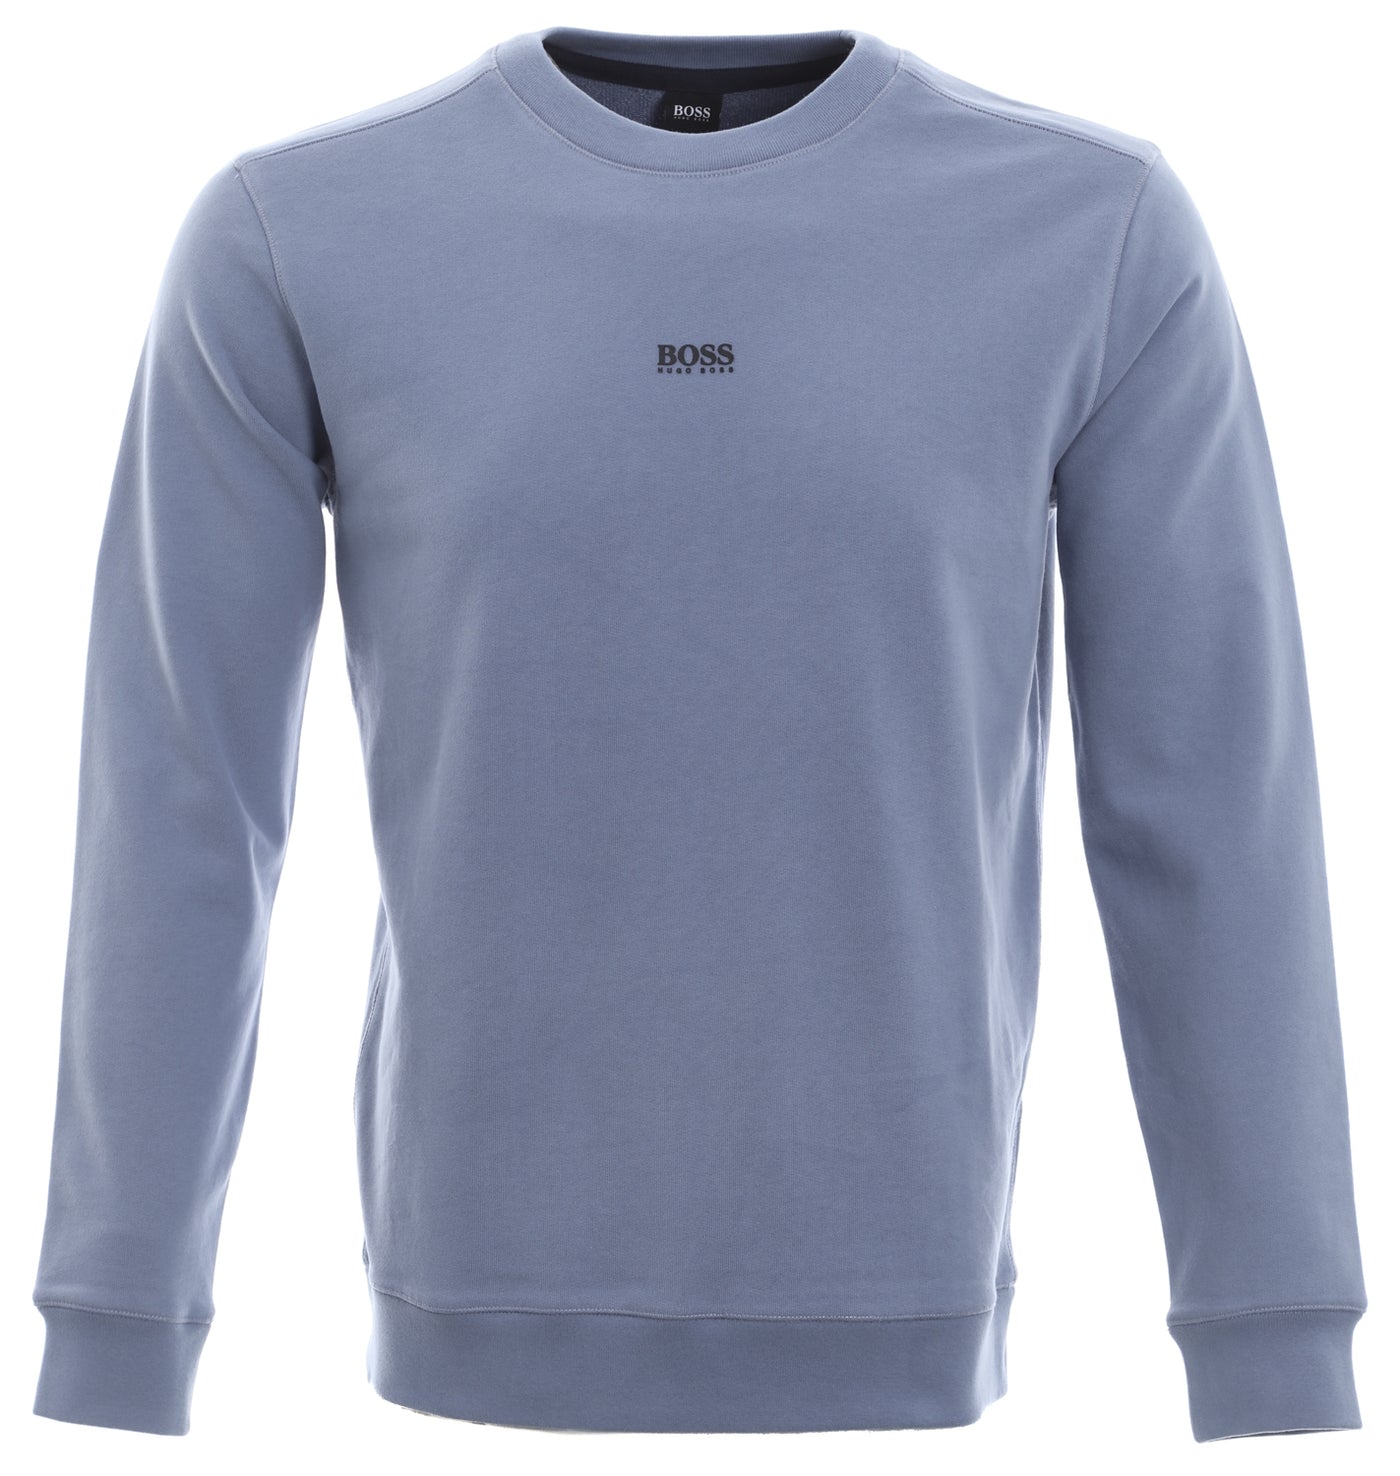 BOSS Weevo 2 Sweatshirt in Airforce Blue